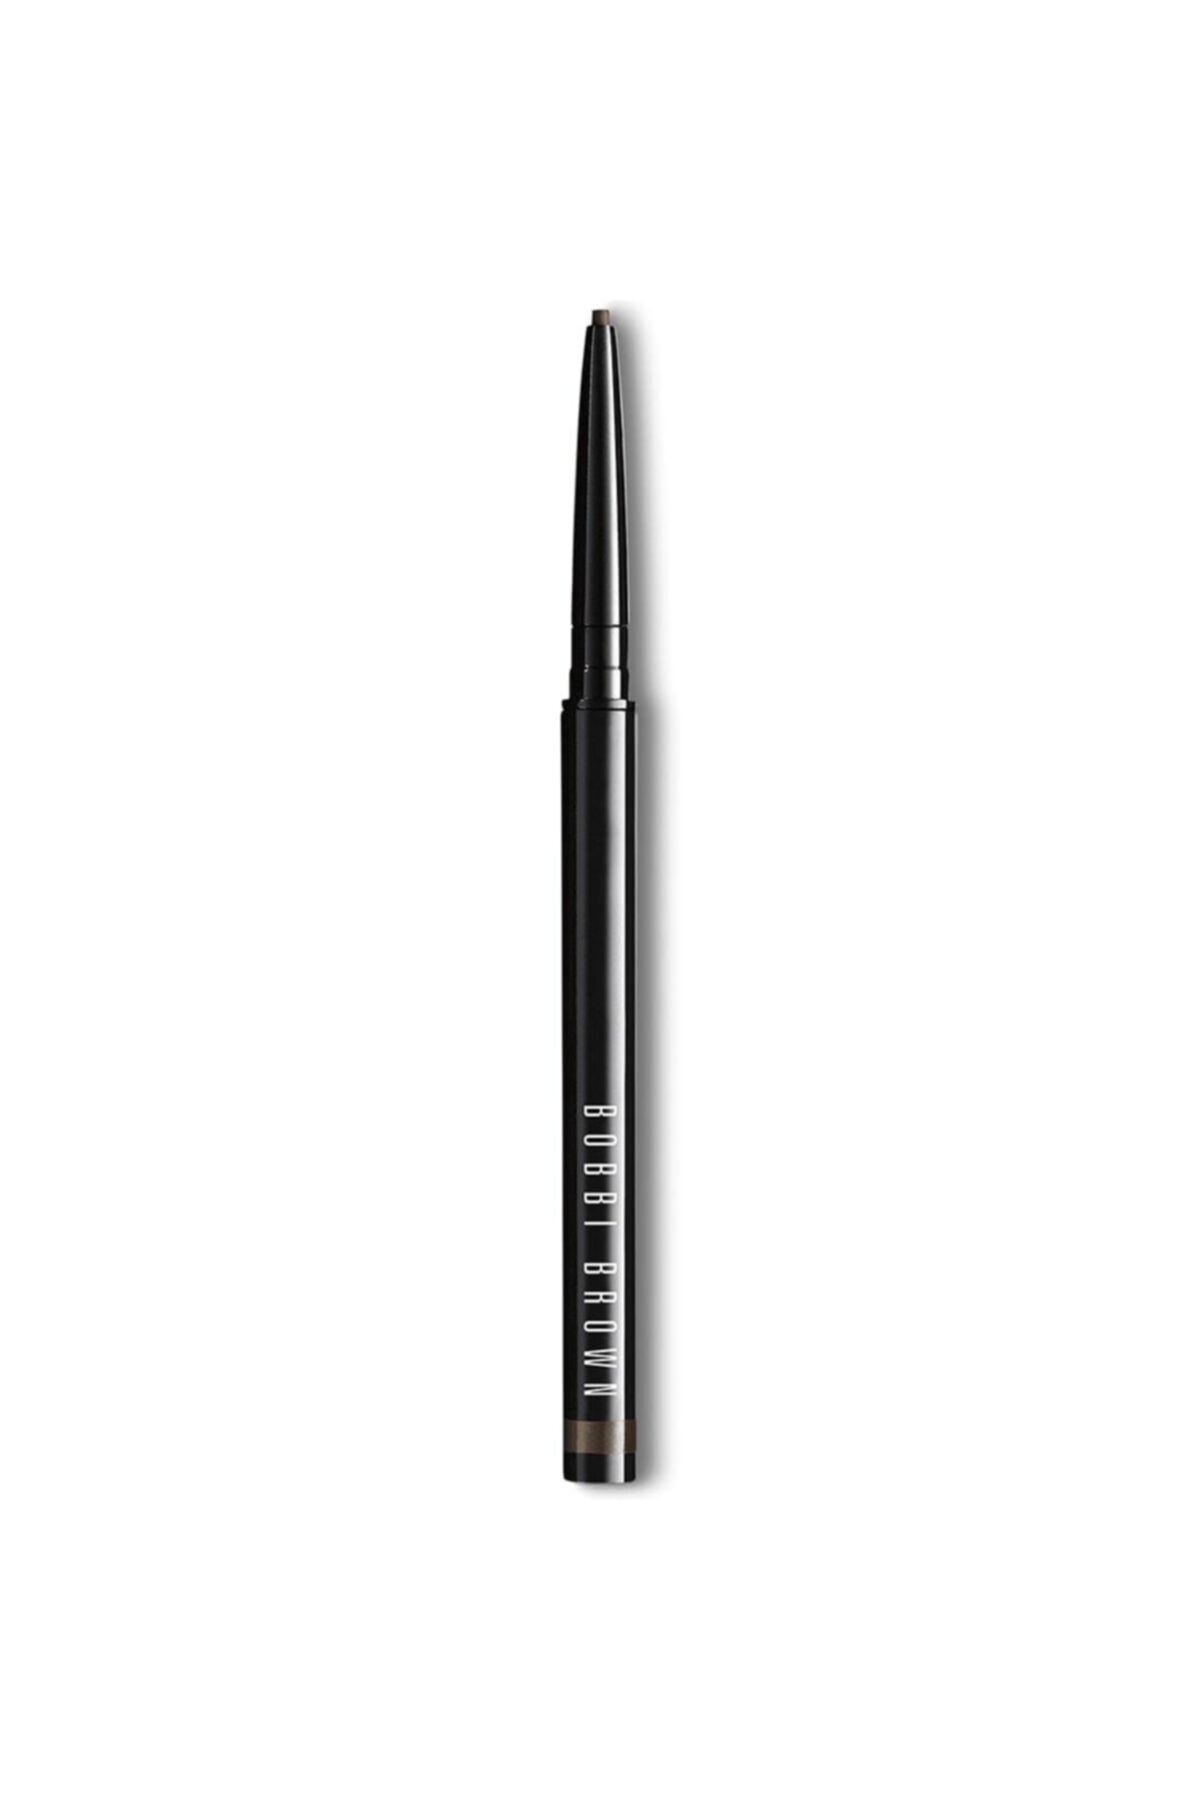 Bobbi Brown Eyeliner - Long Wear Waterproof Liner Black Chocolate 0.02 oz. 716170179421